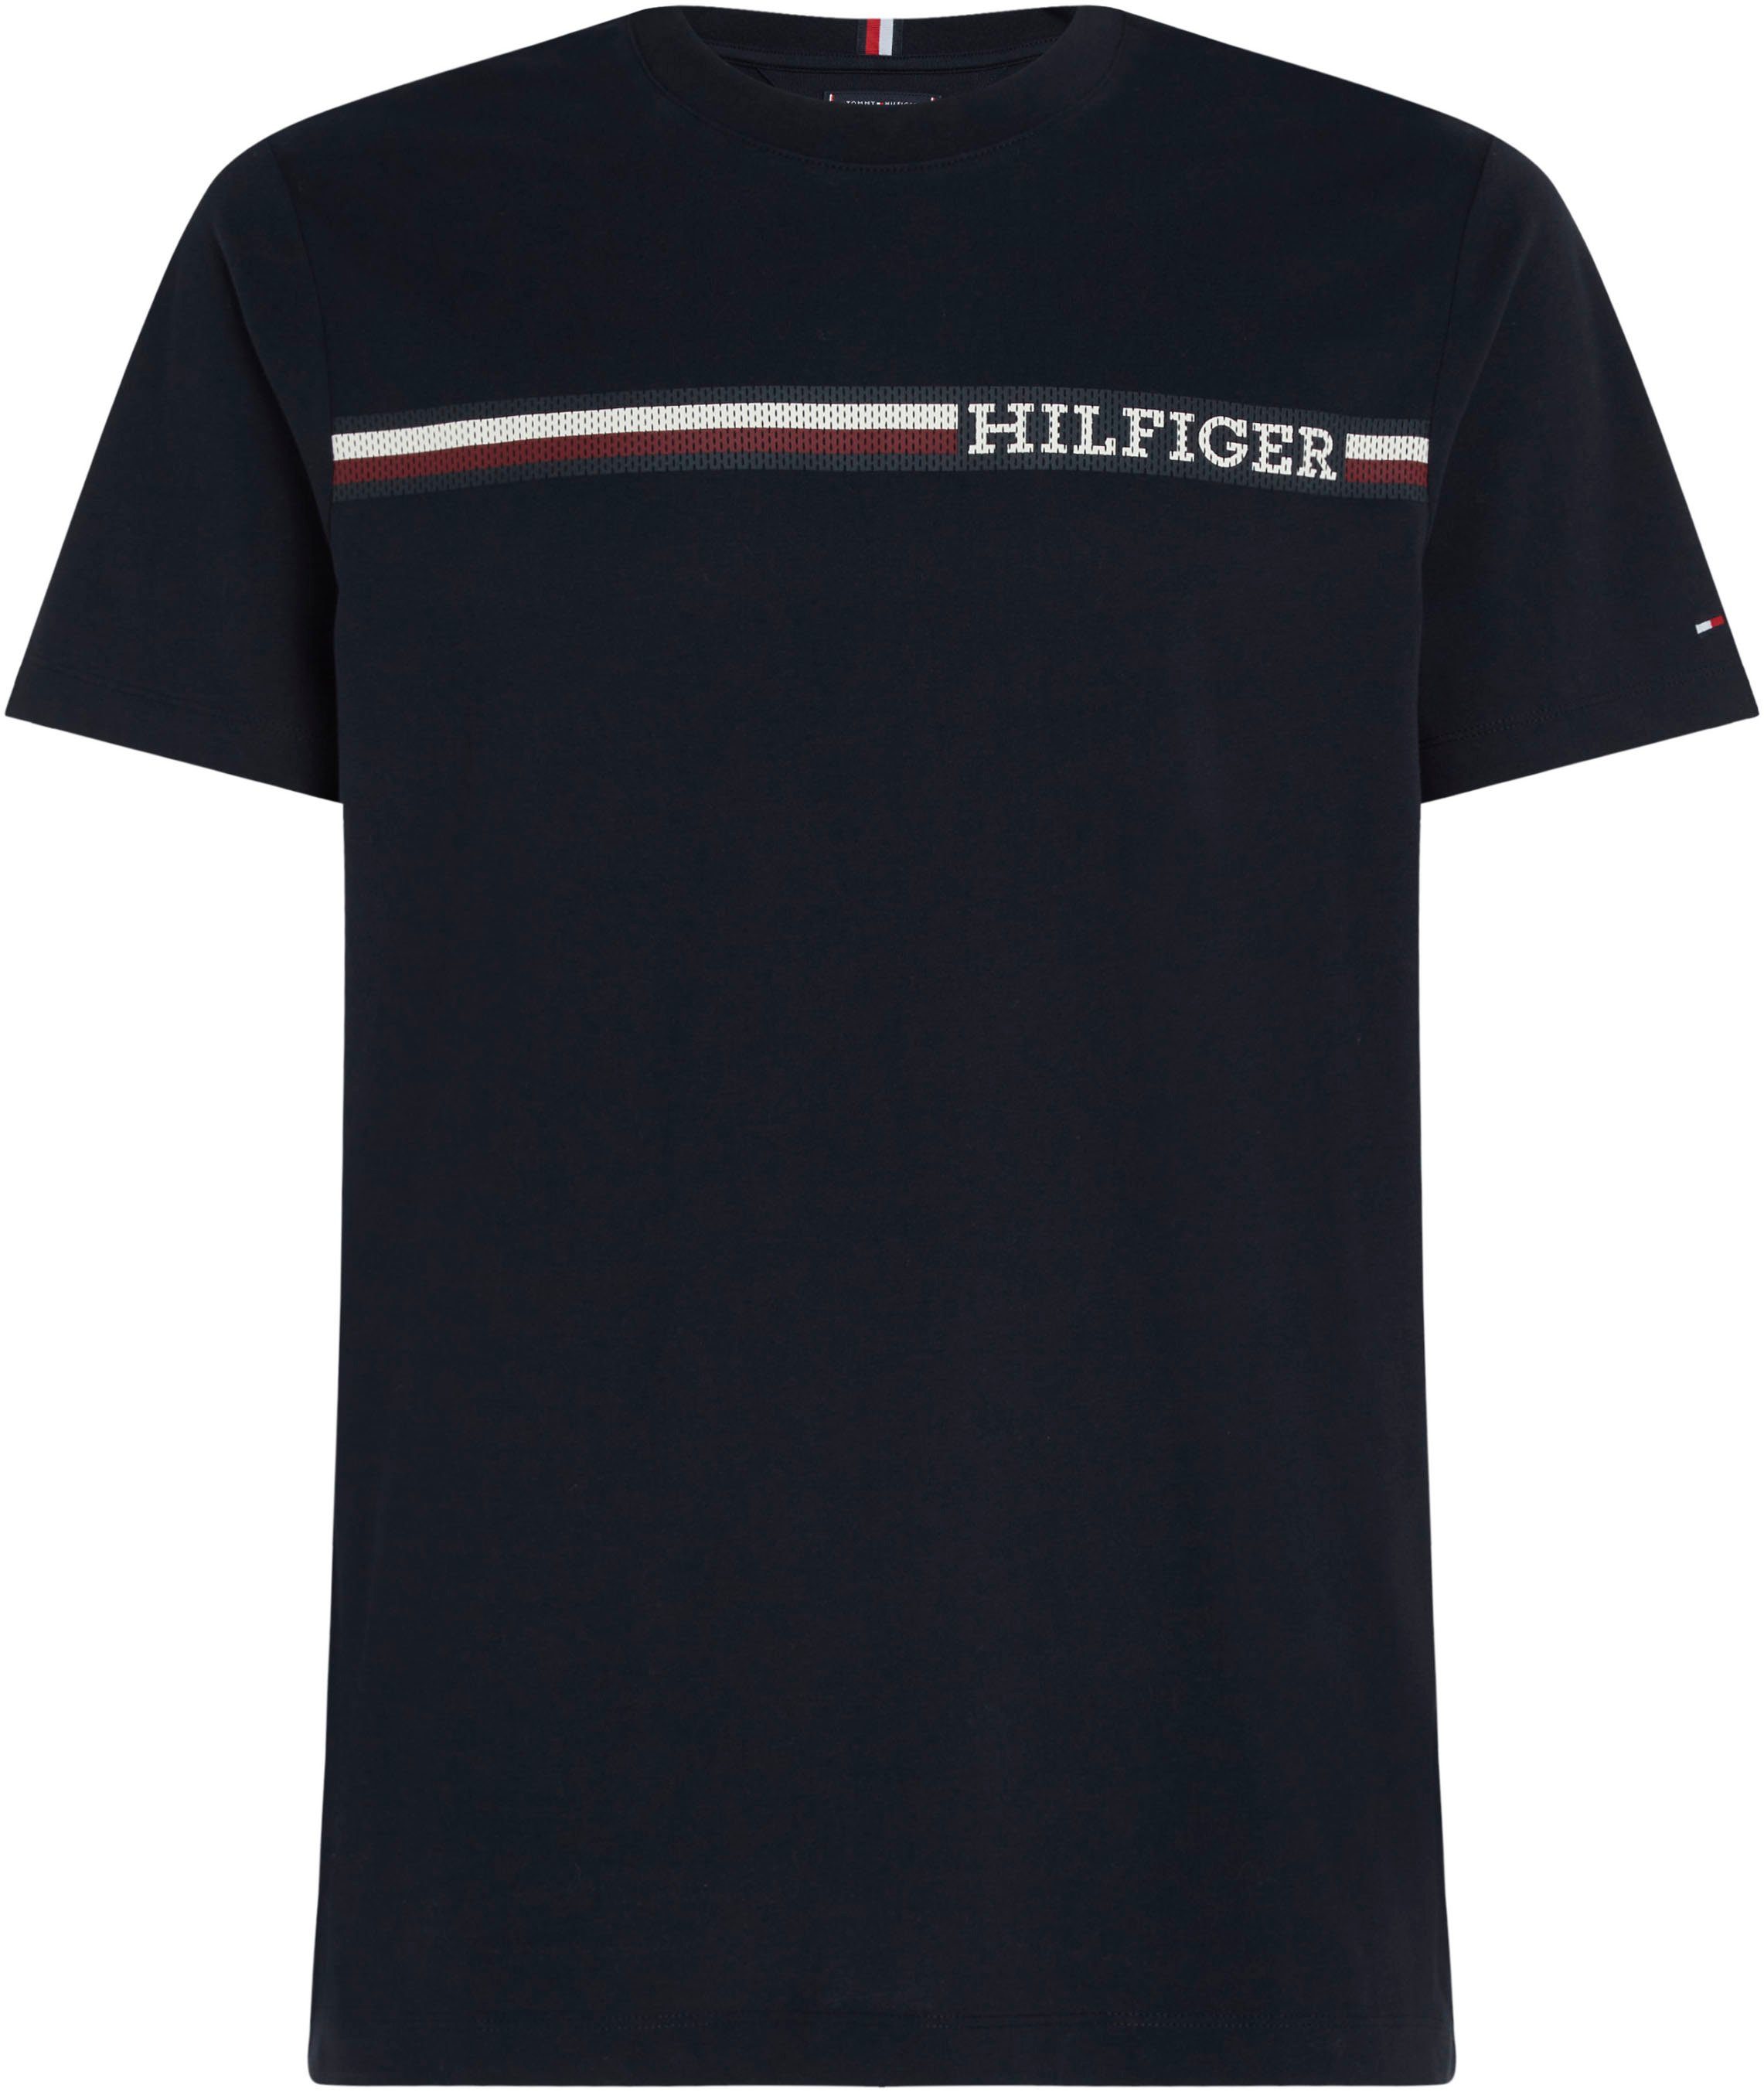 Tommy Hilfiger T-Shirt MONOTYPE Sky CHEST Desert STRIPE Markenlogo TEE mit